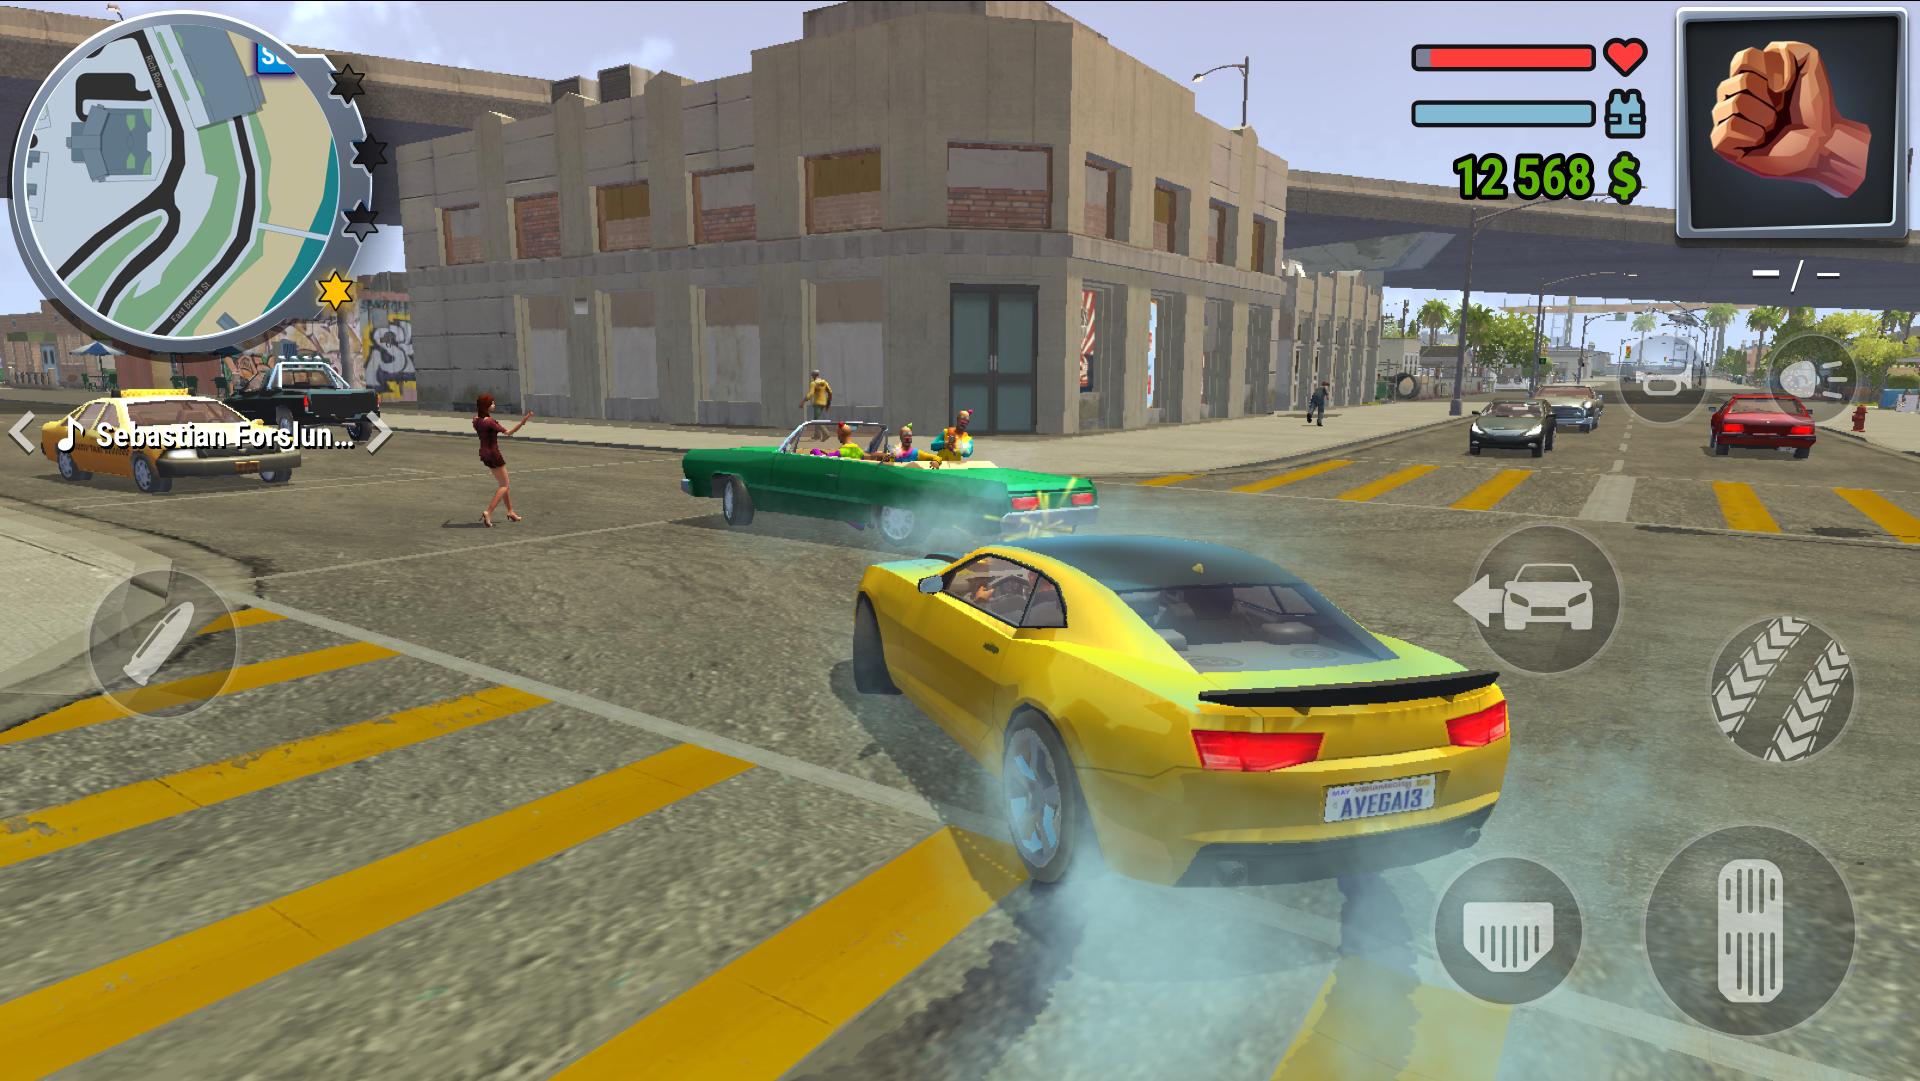 Gangs Town Story action open-world shooter 0.12.3b Screenshot 5